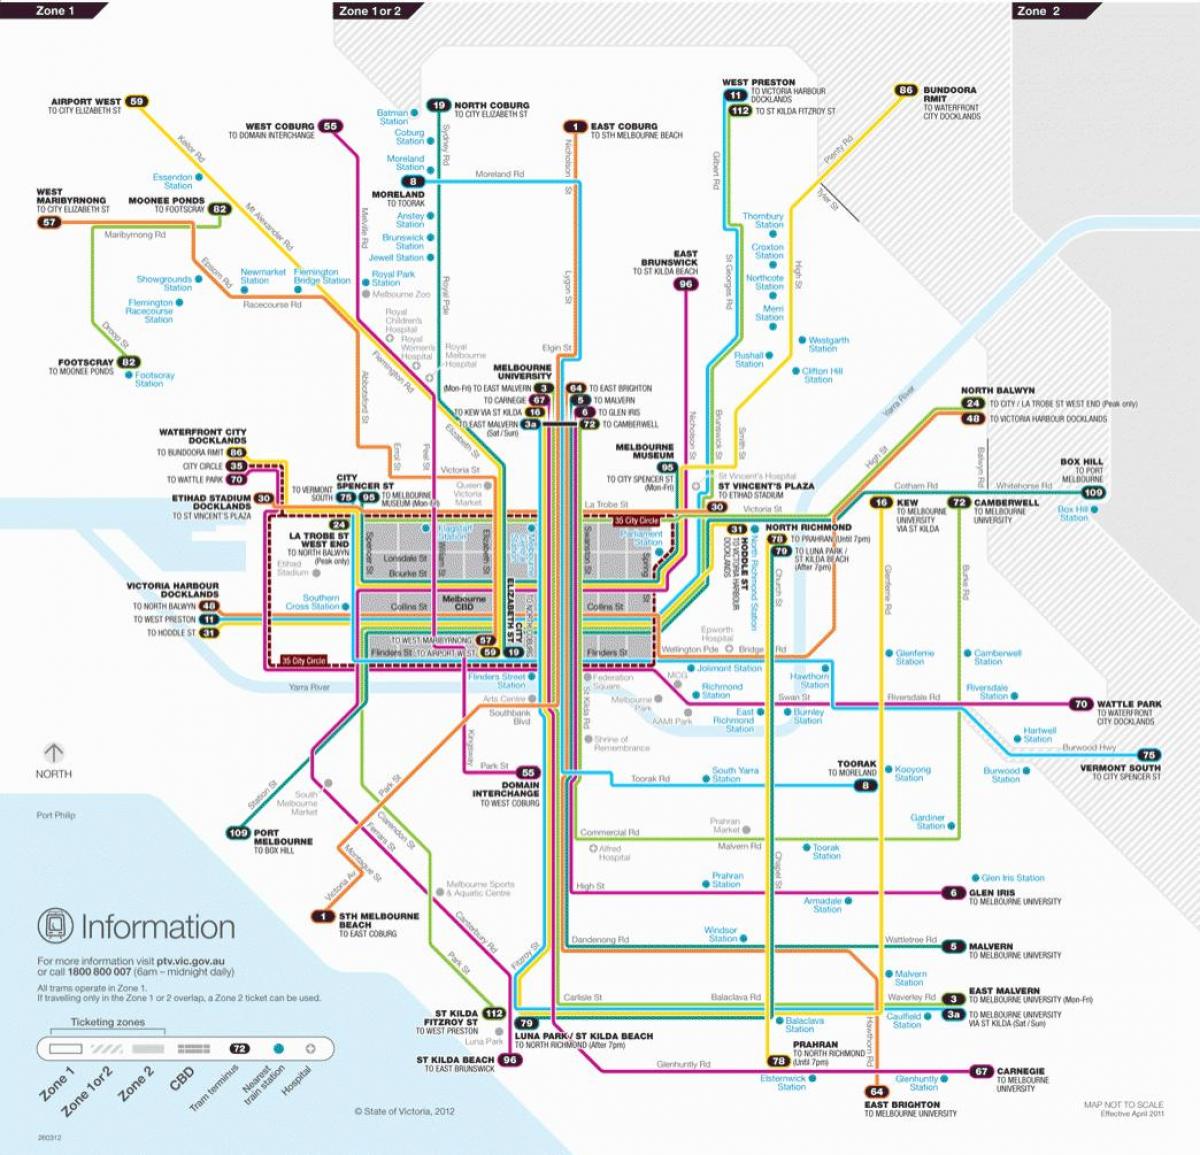 Melbourne tramvay Ağ Haritası